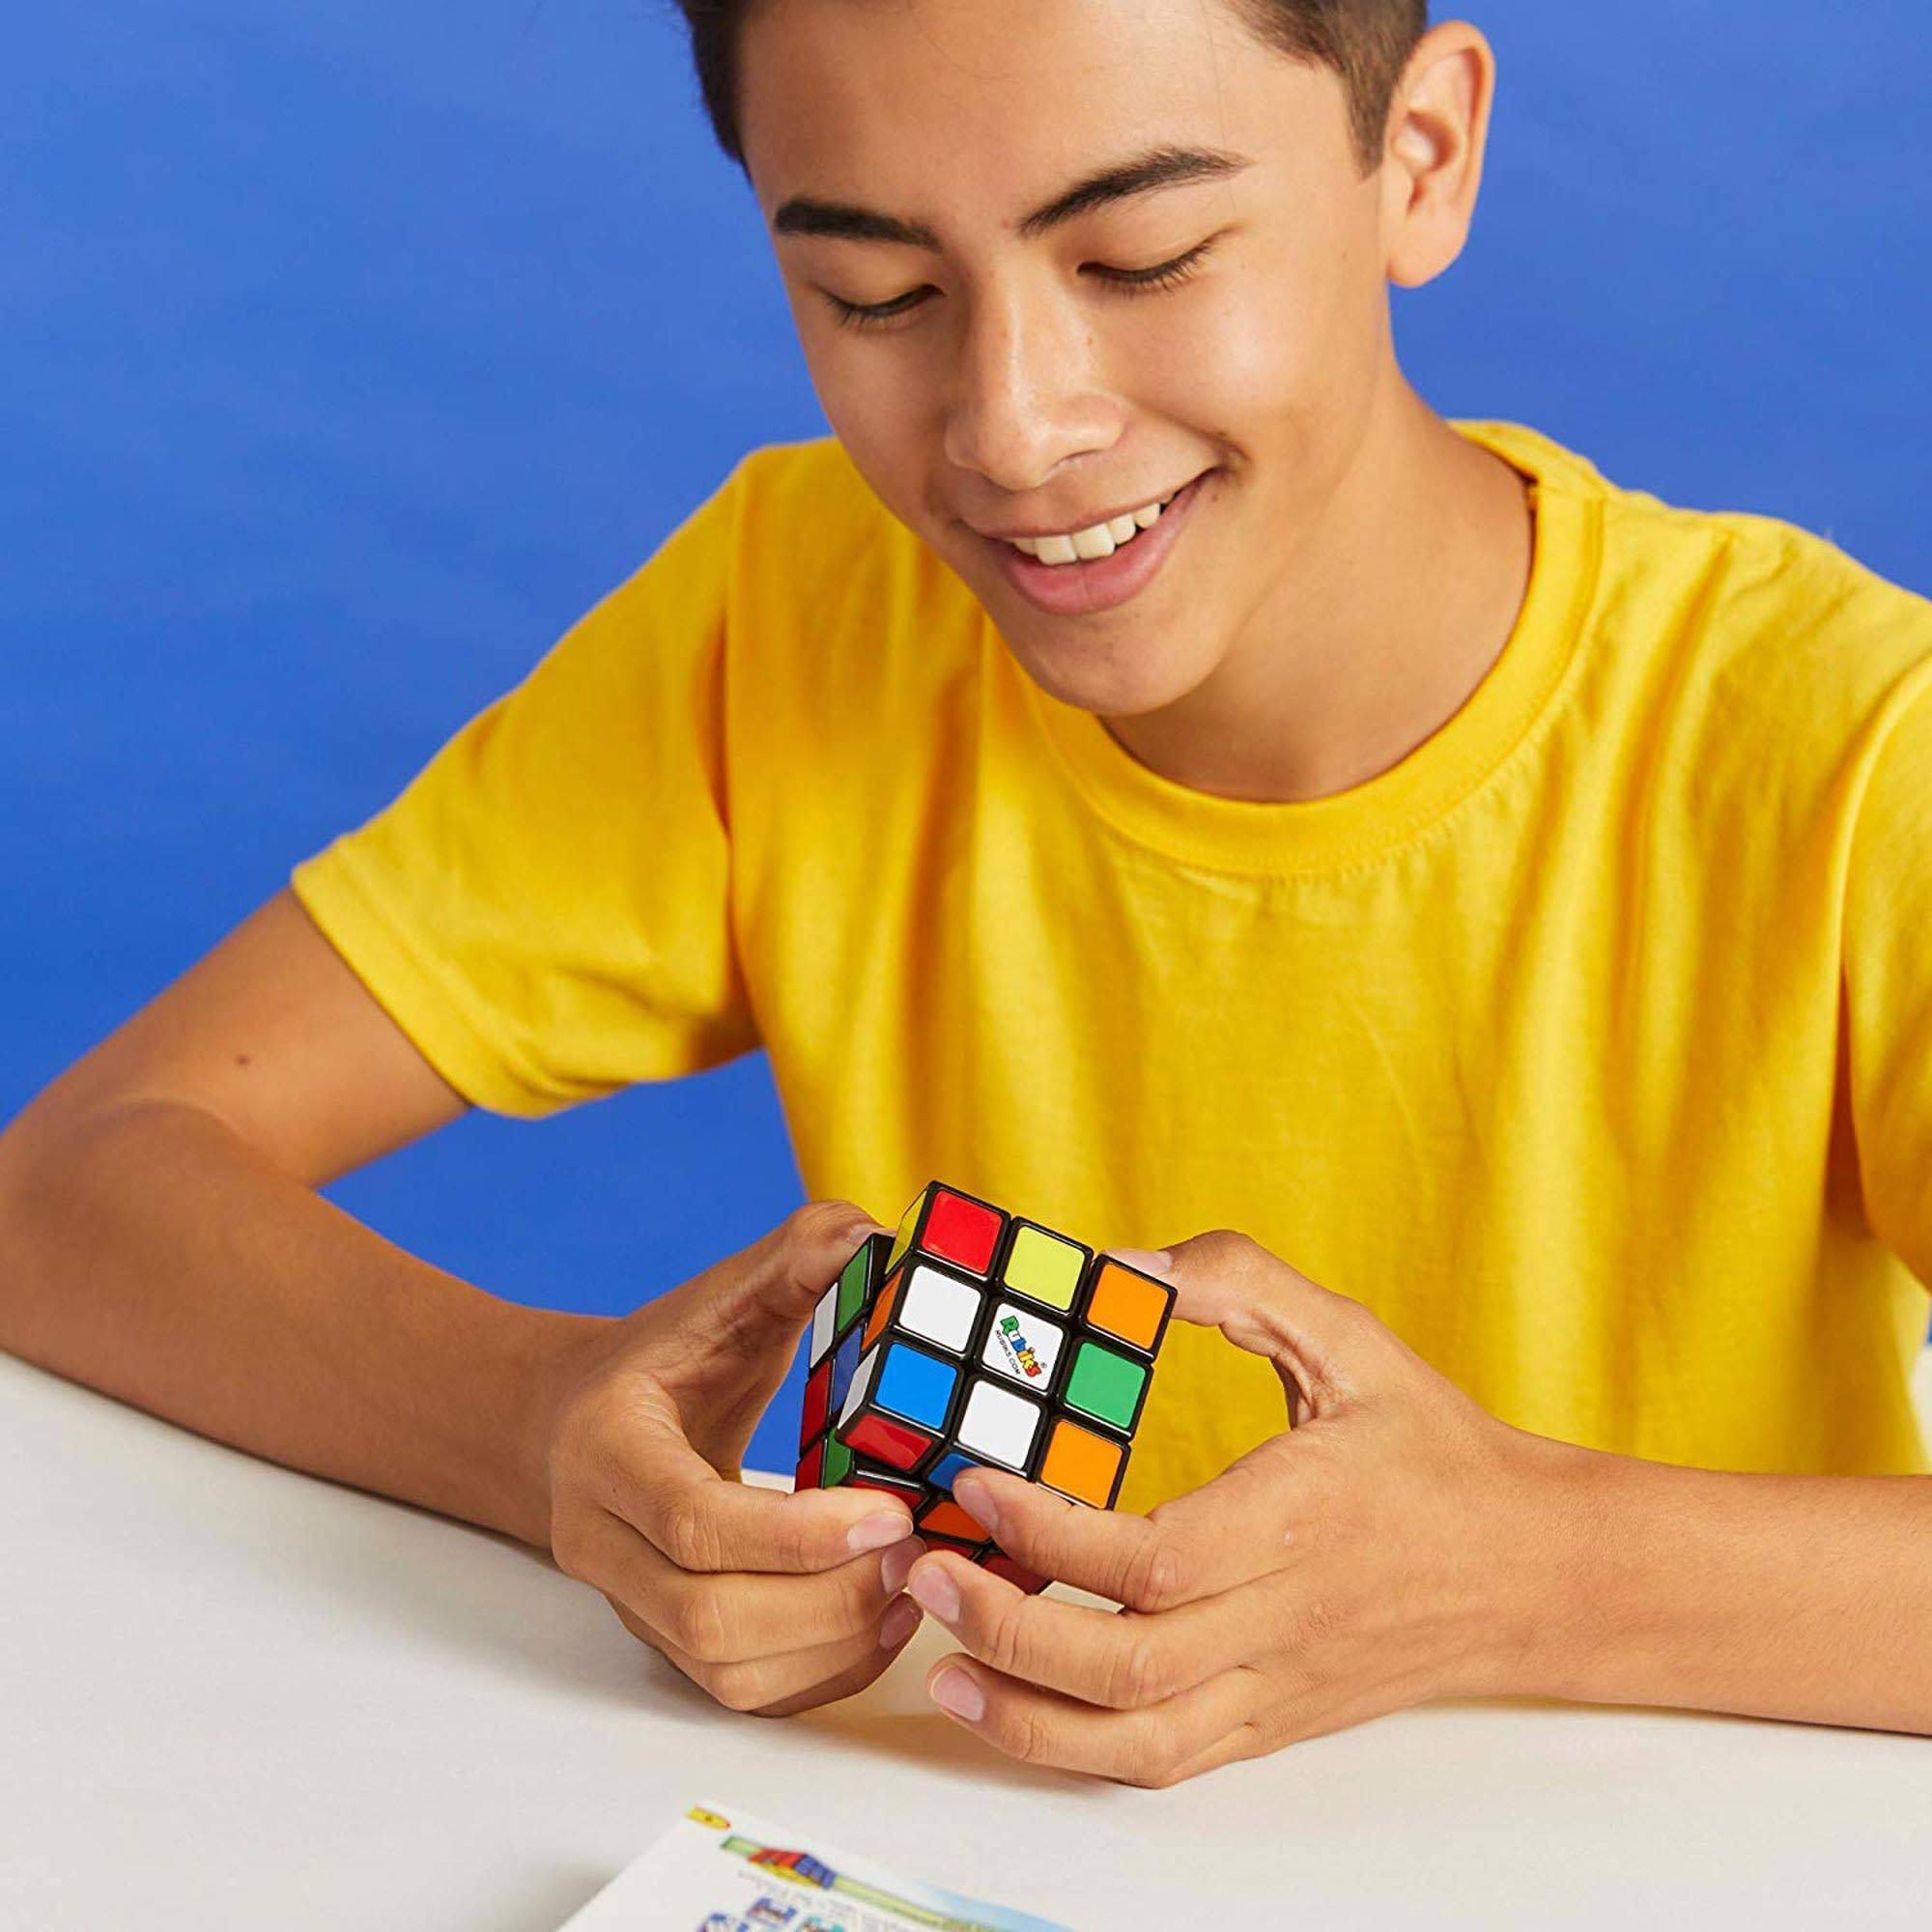 Il cubo di rubik classico 3x3, l'originale, età 8+, rompicapo professionale - RUBIK'S CUBE